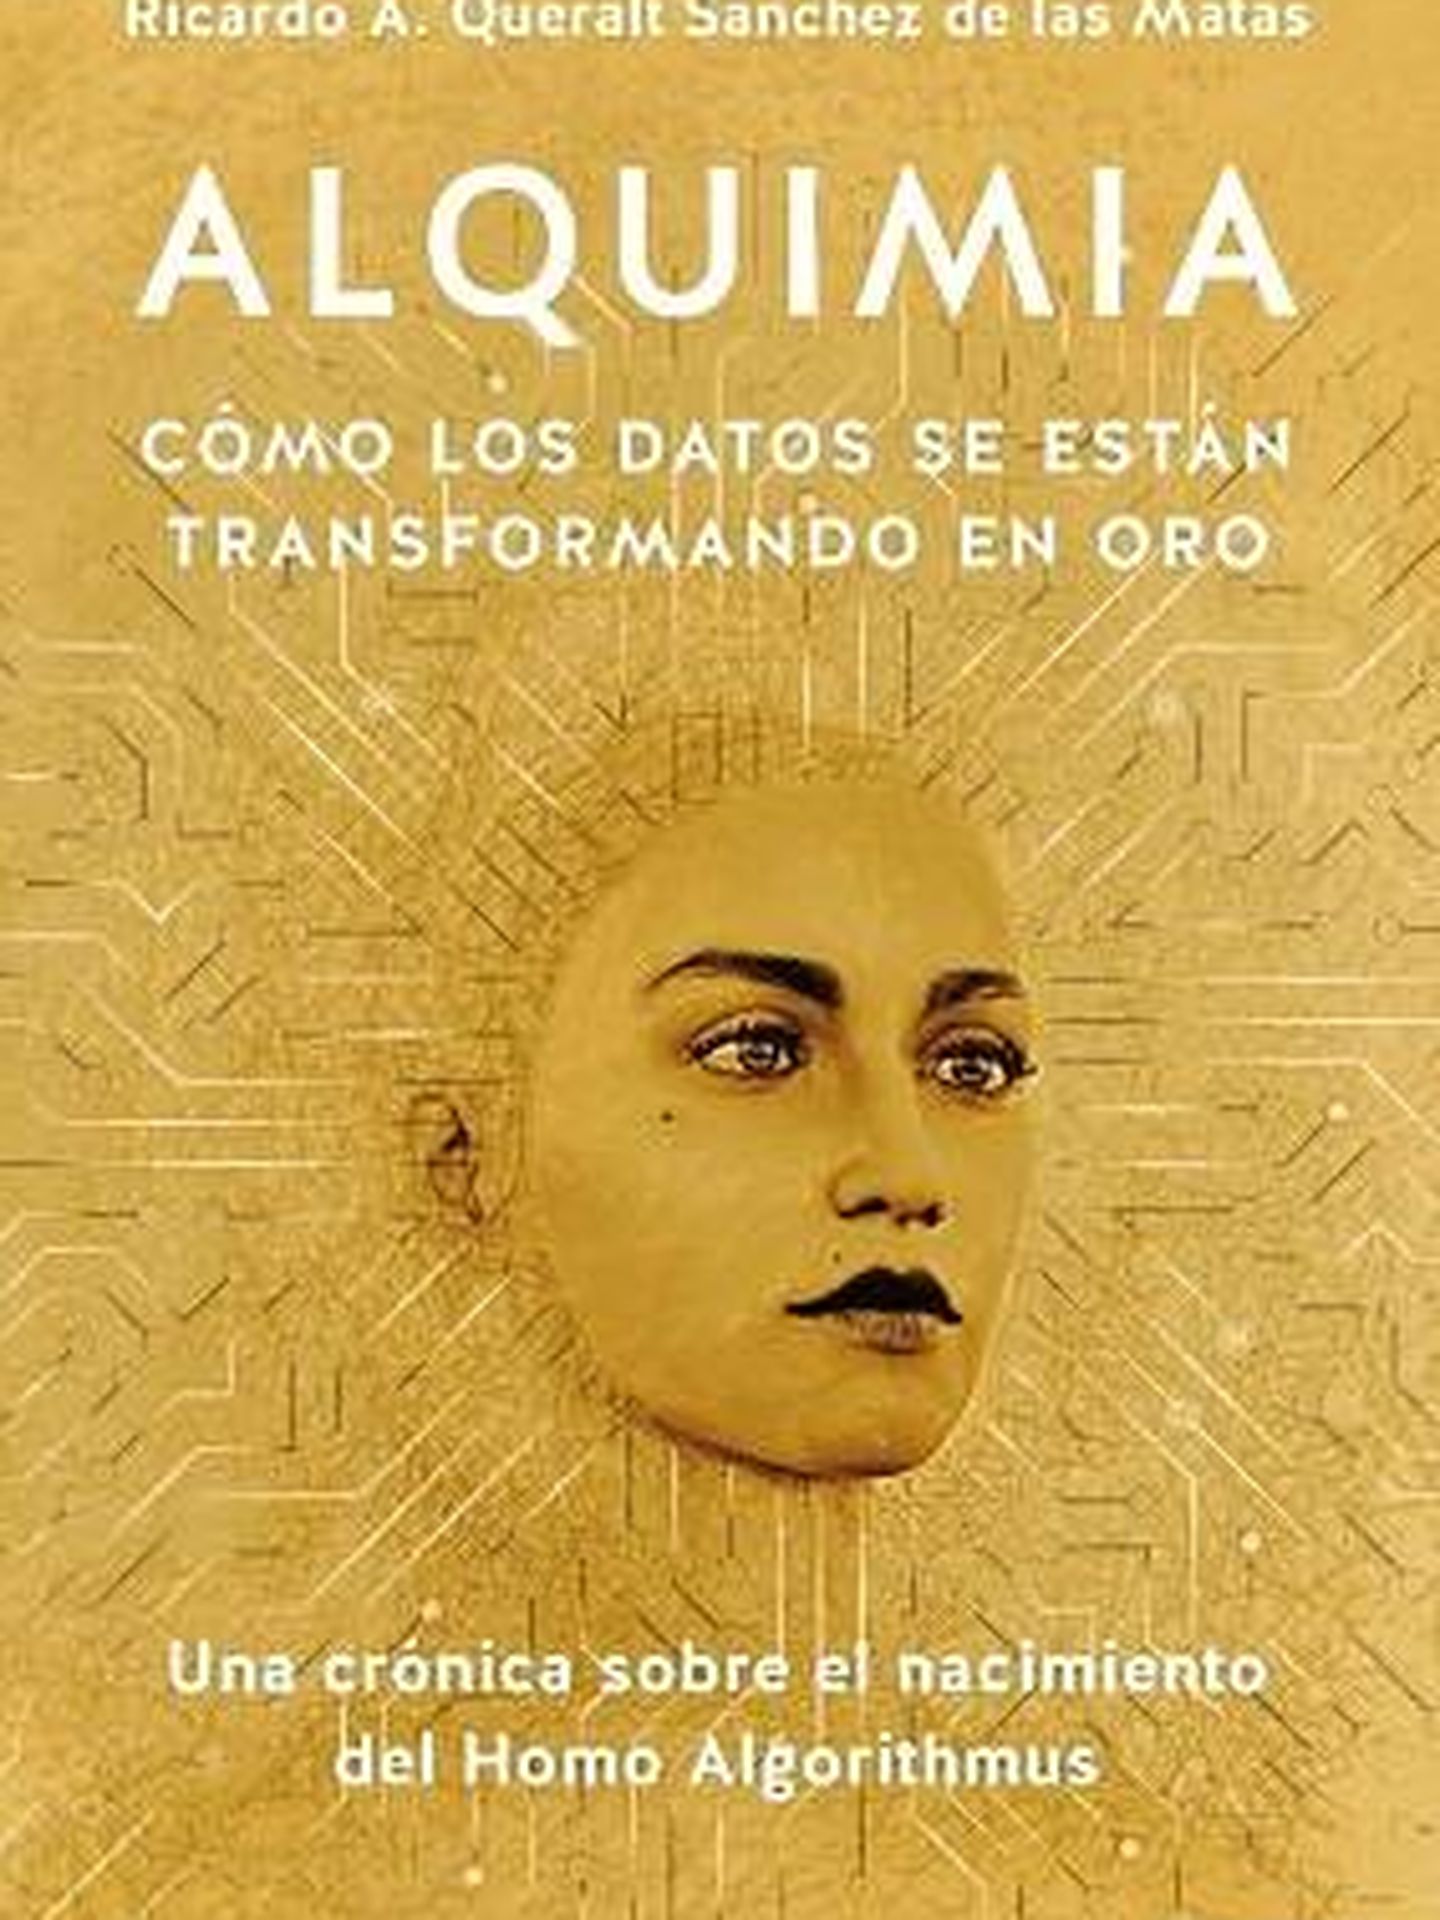 La portada de 'Alquimia'.